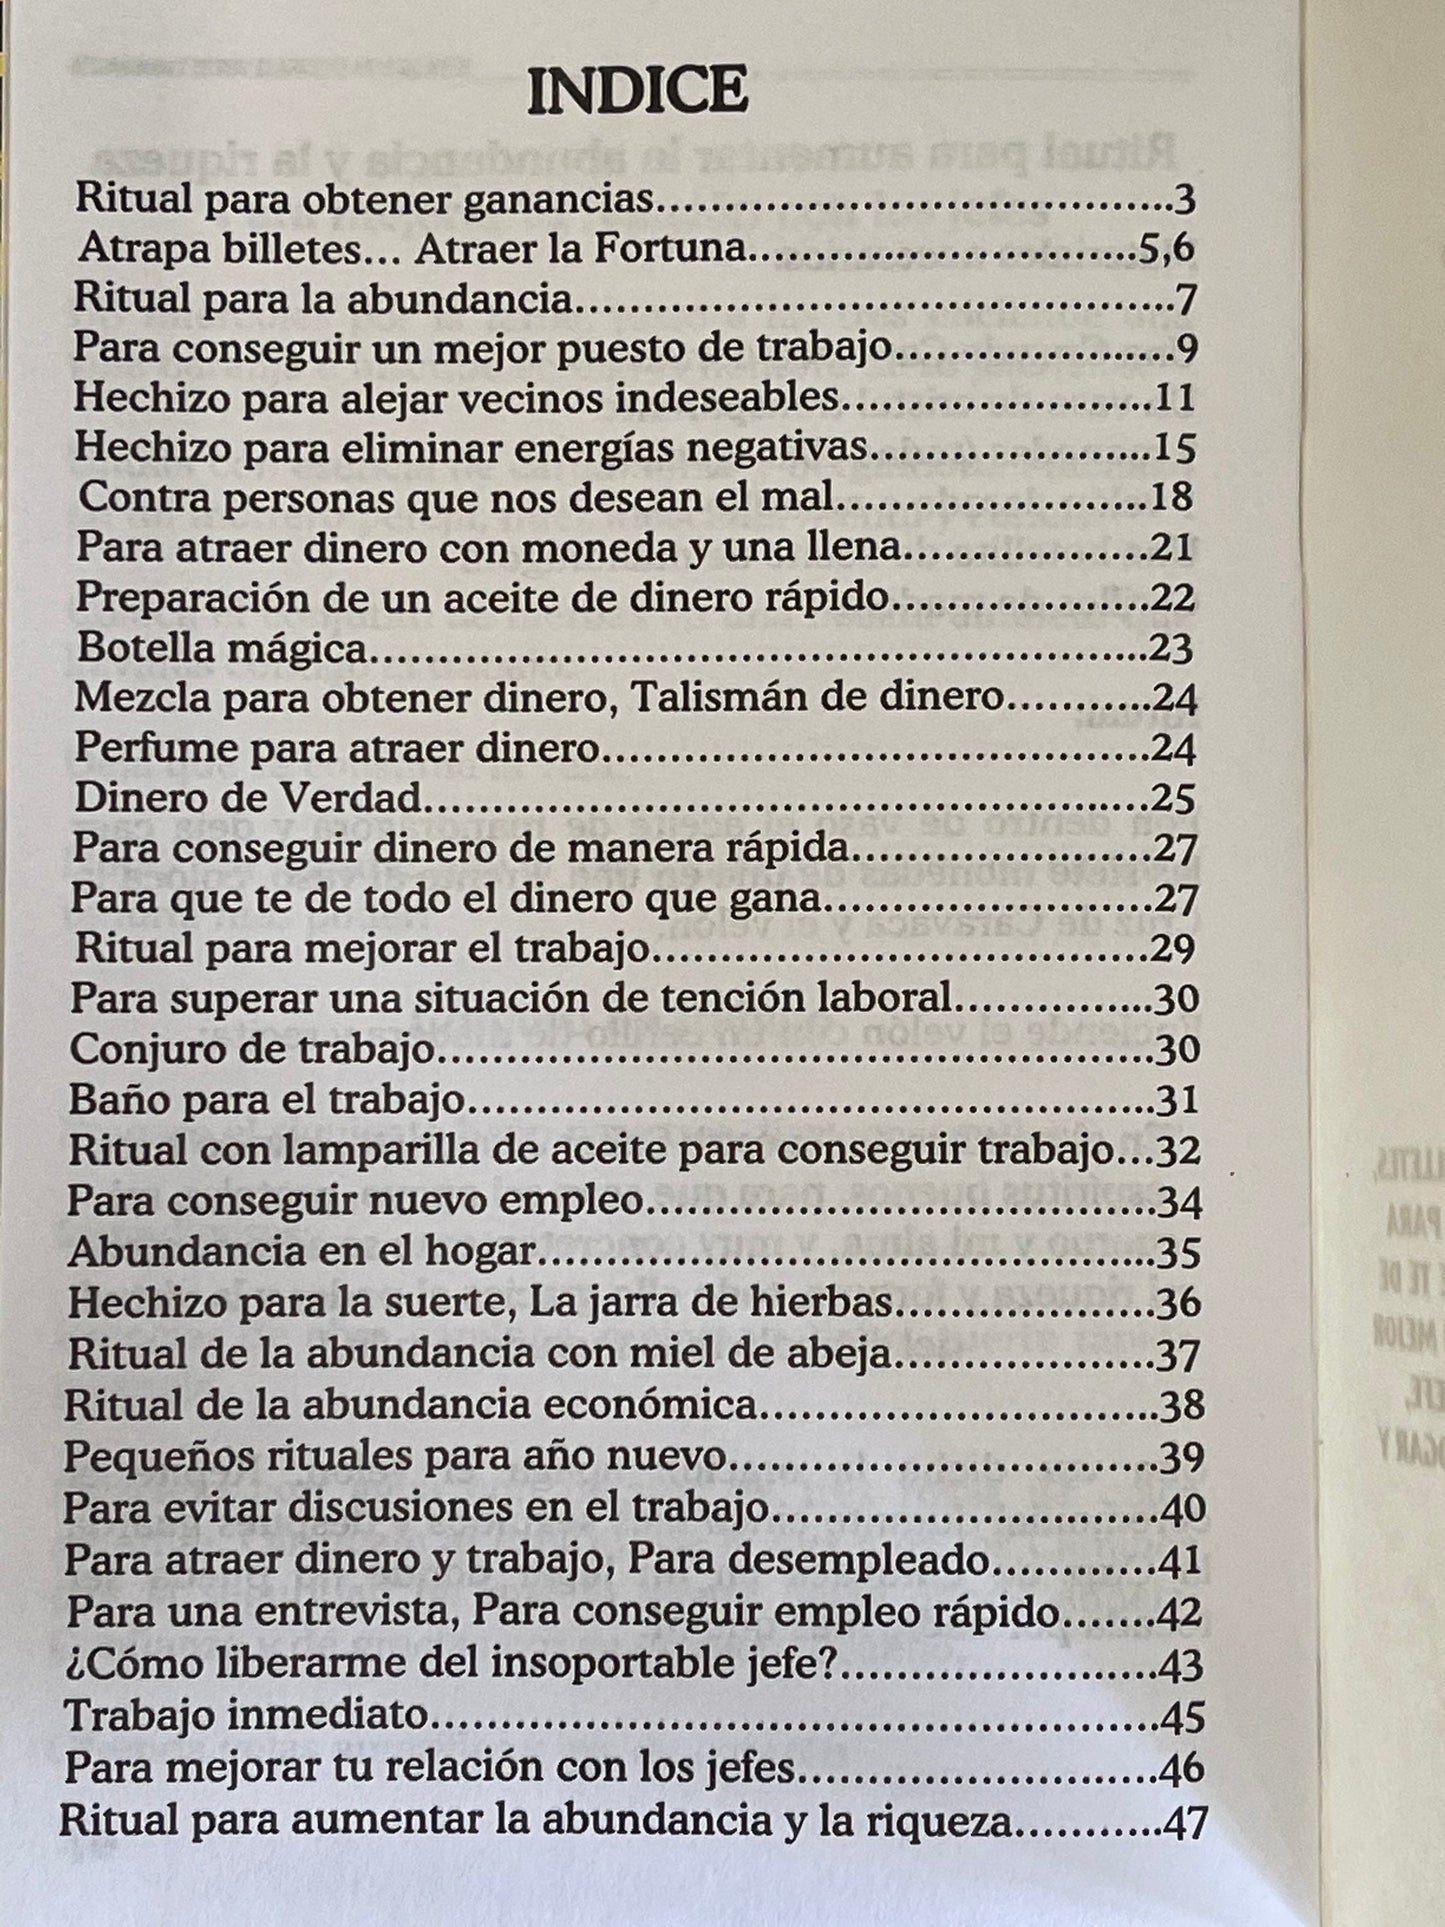 Rituals para el Trabajo, Dinero, y Abundancia + From Mexico *NEW BOOK*